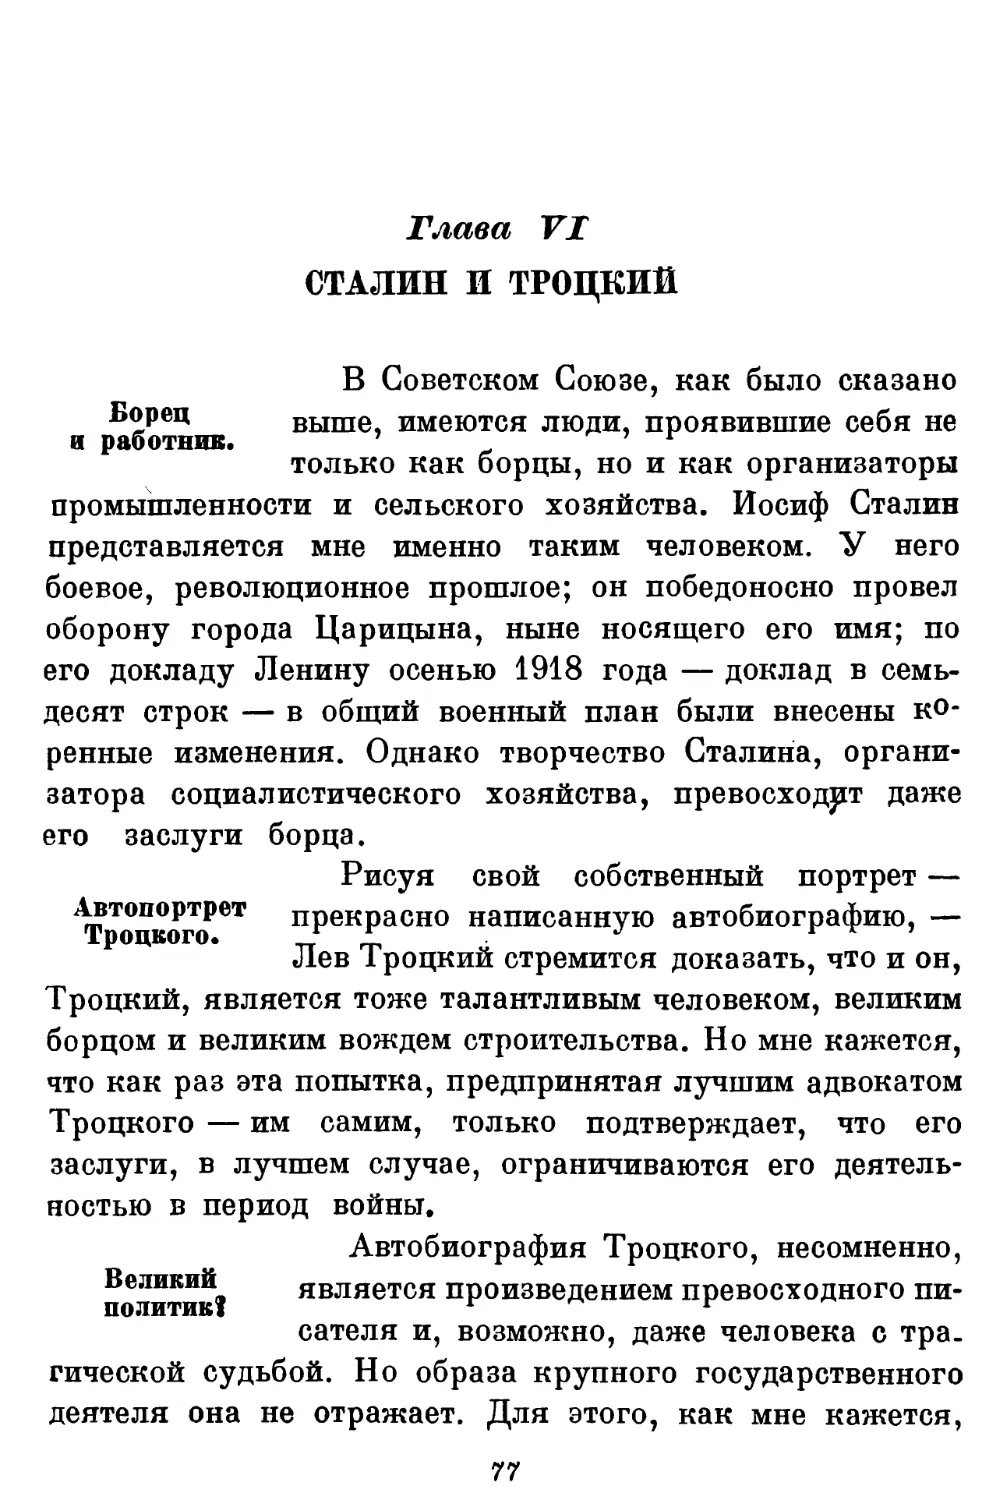 Глава VI. Сталин и Троцкий